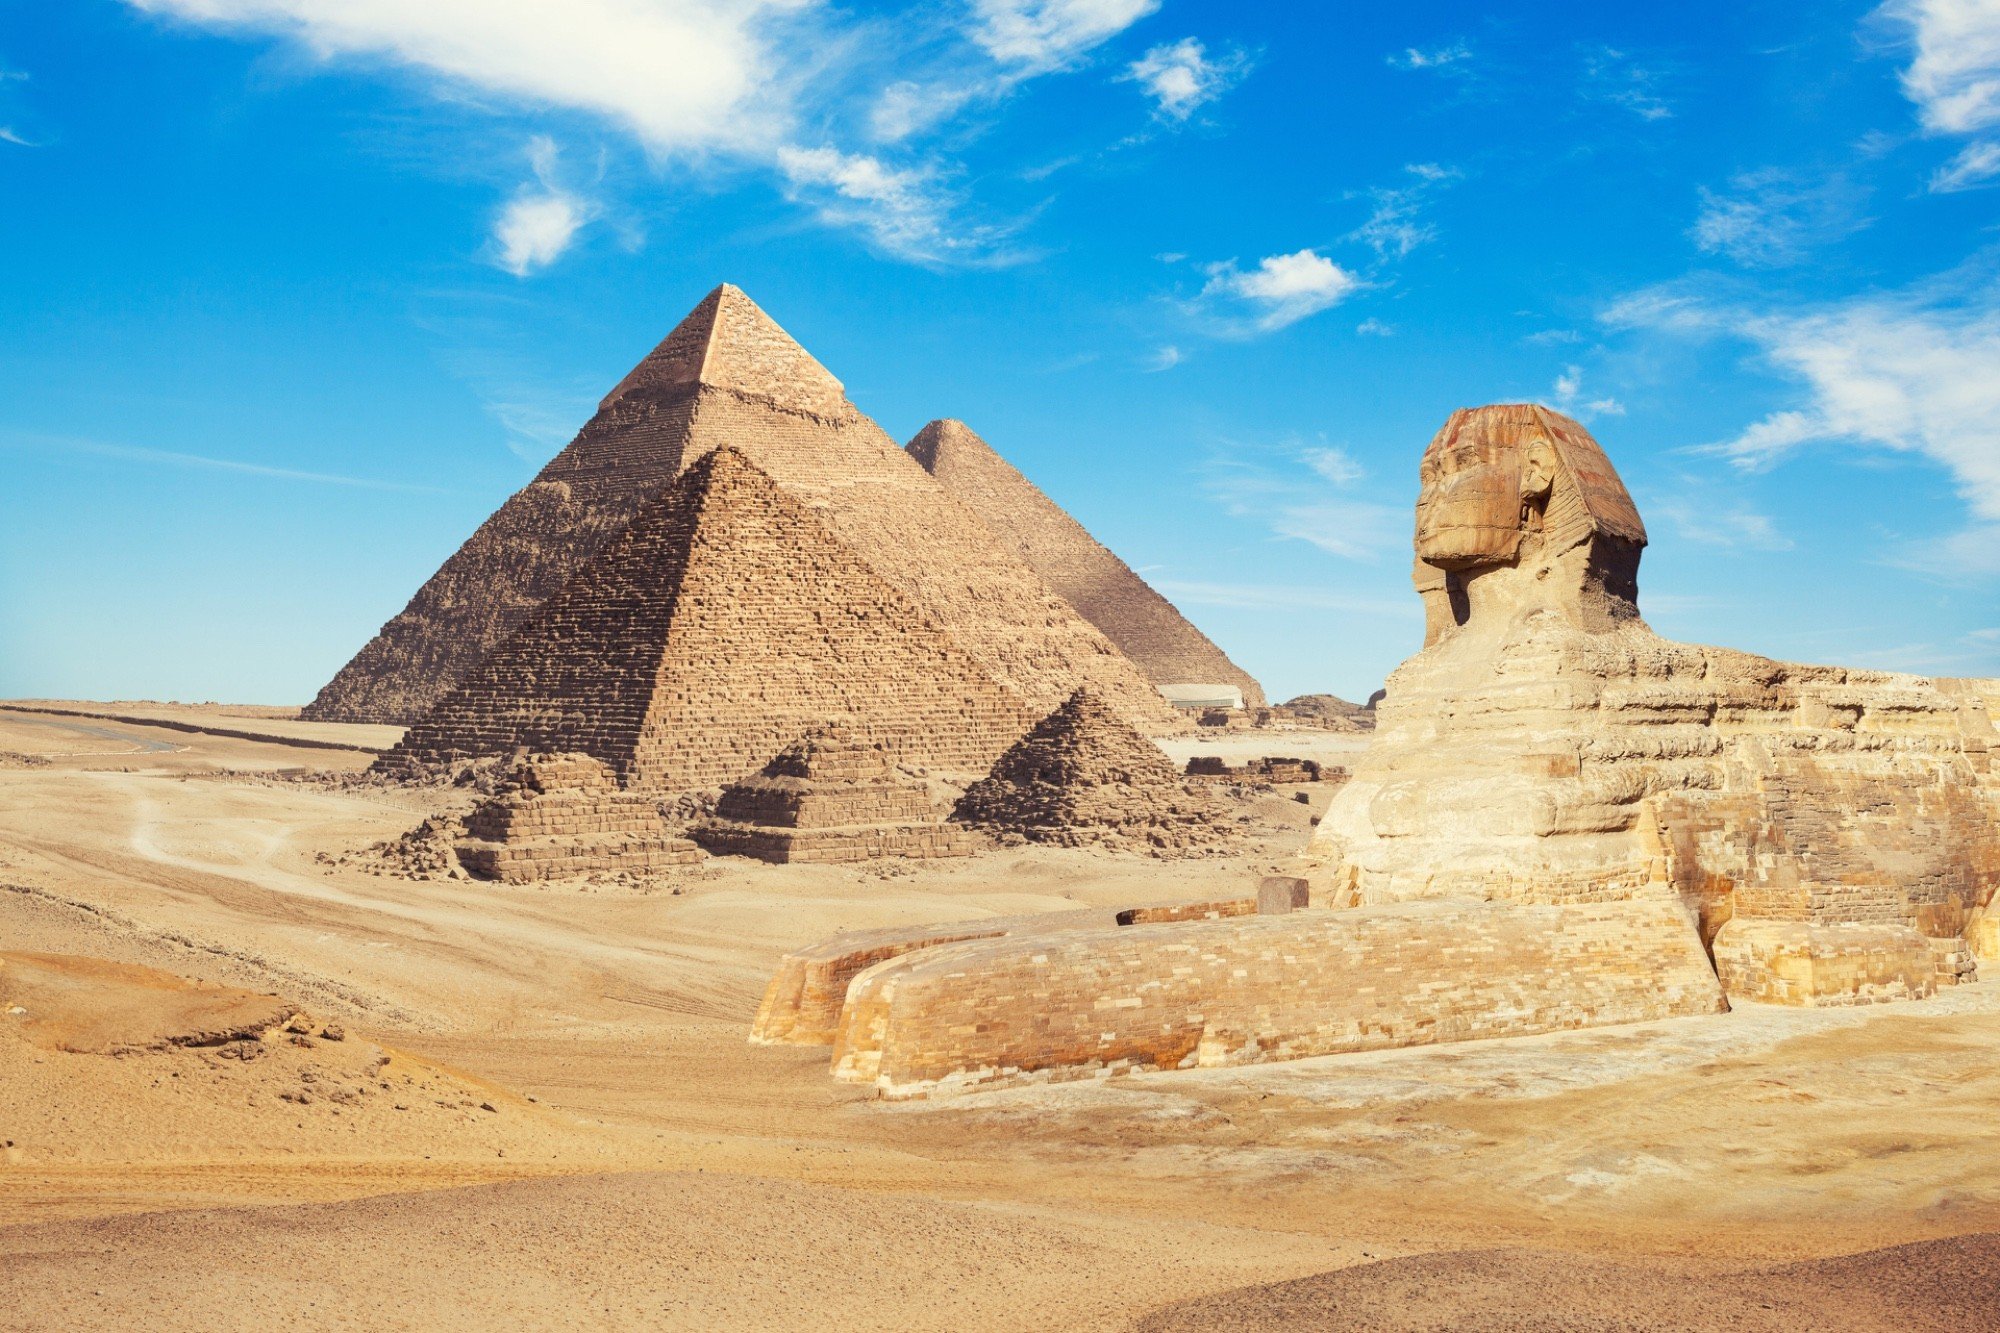 Пирамиды Древнего Египта